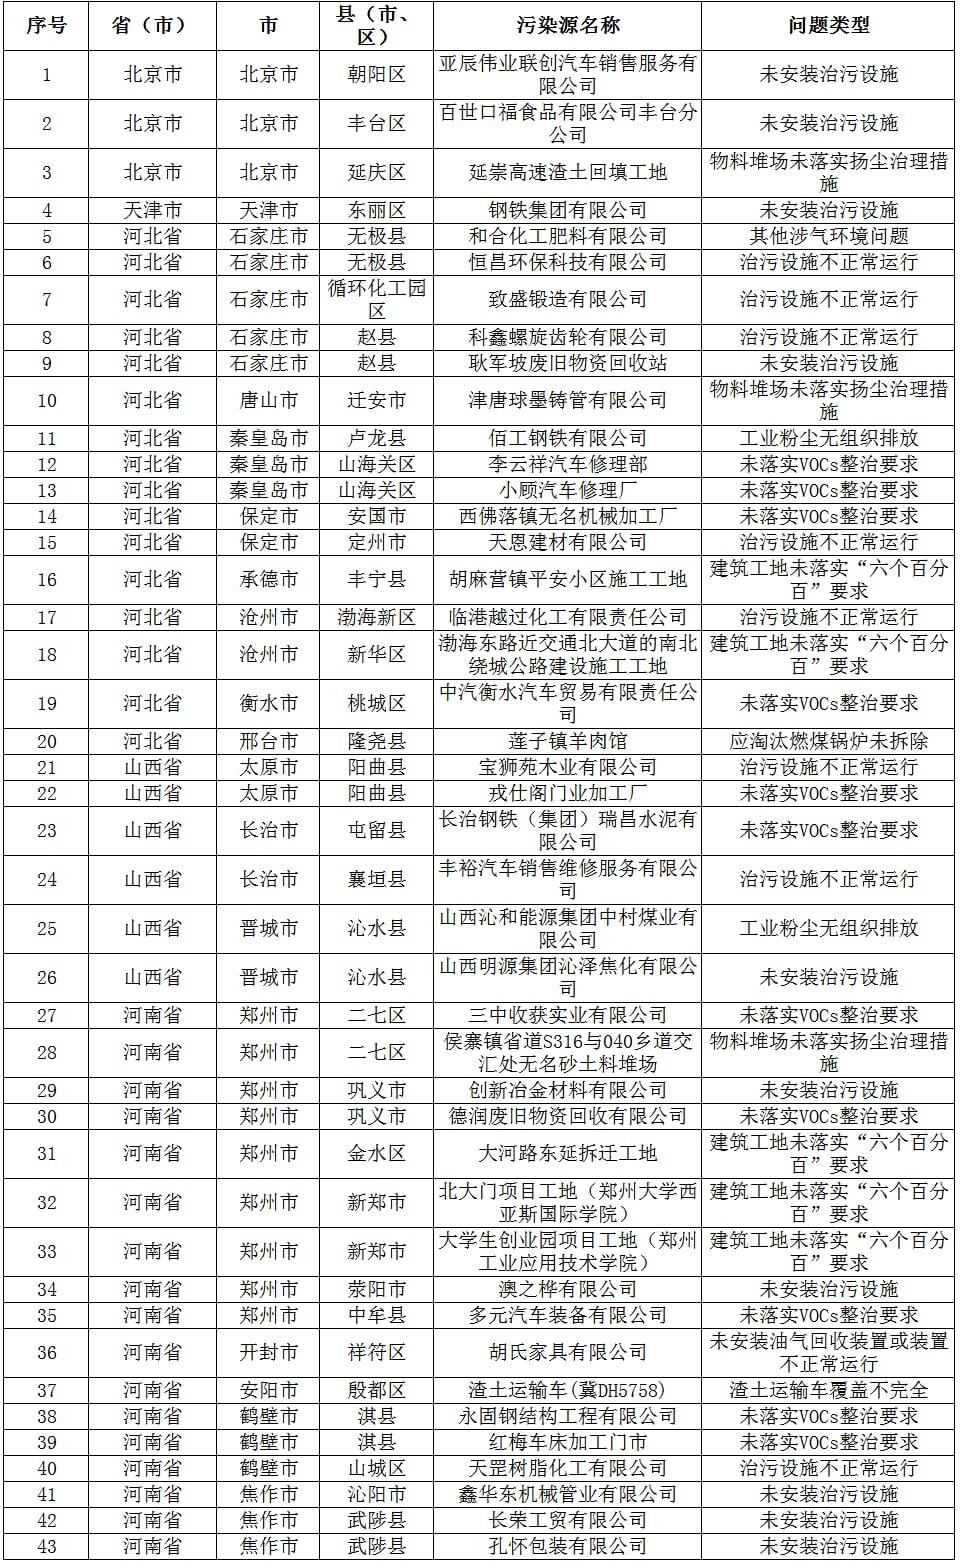 强化督查 | 8月26日京津冀及周边地区发现涉气环境问题43个